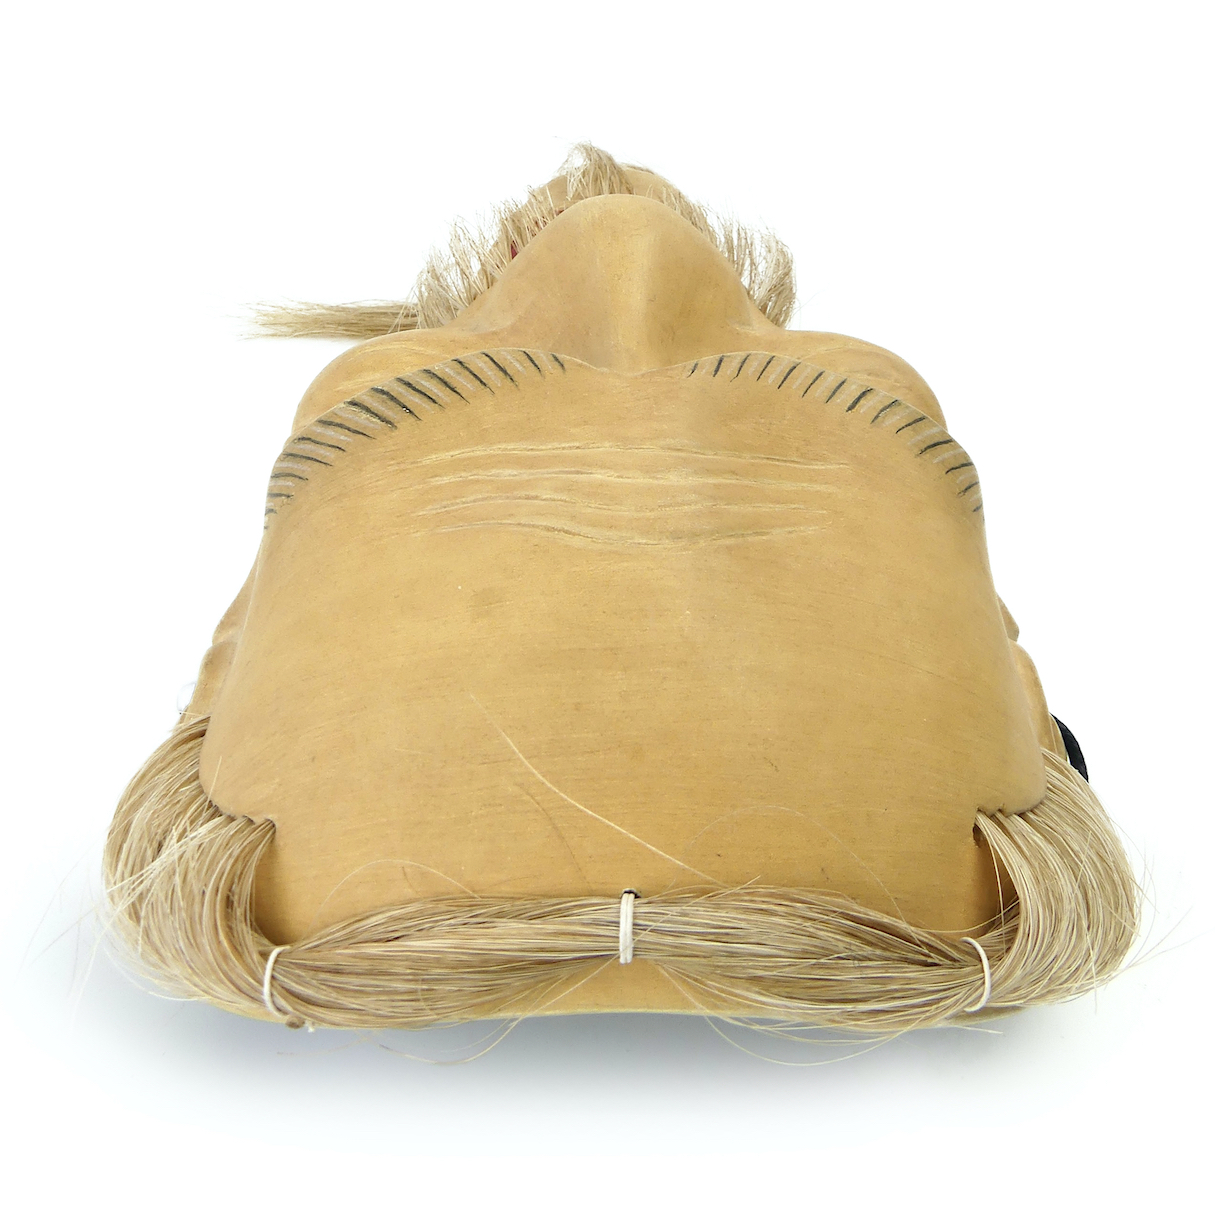 Masque for Sale avec l'œuvre « HA HA HA Bouche cousue » de l'artiste  etraveler